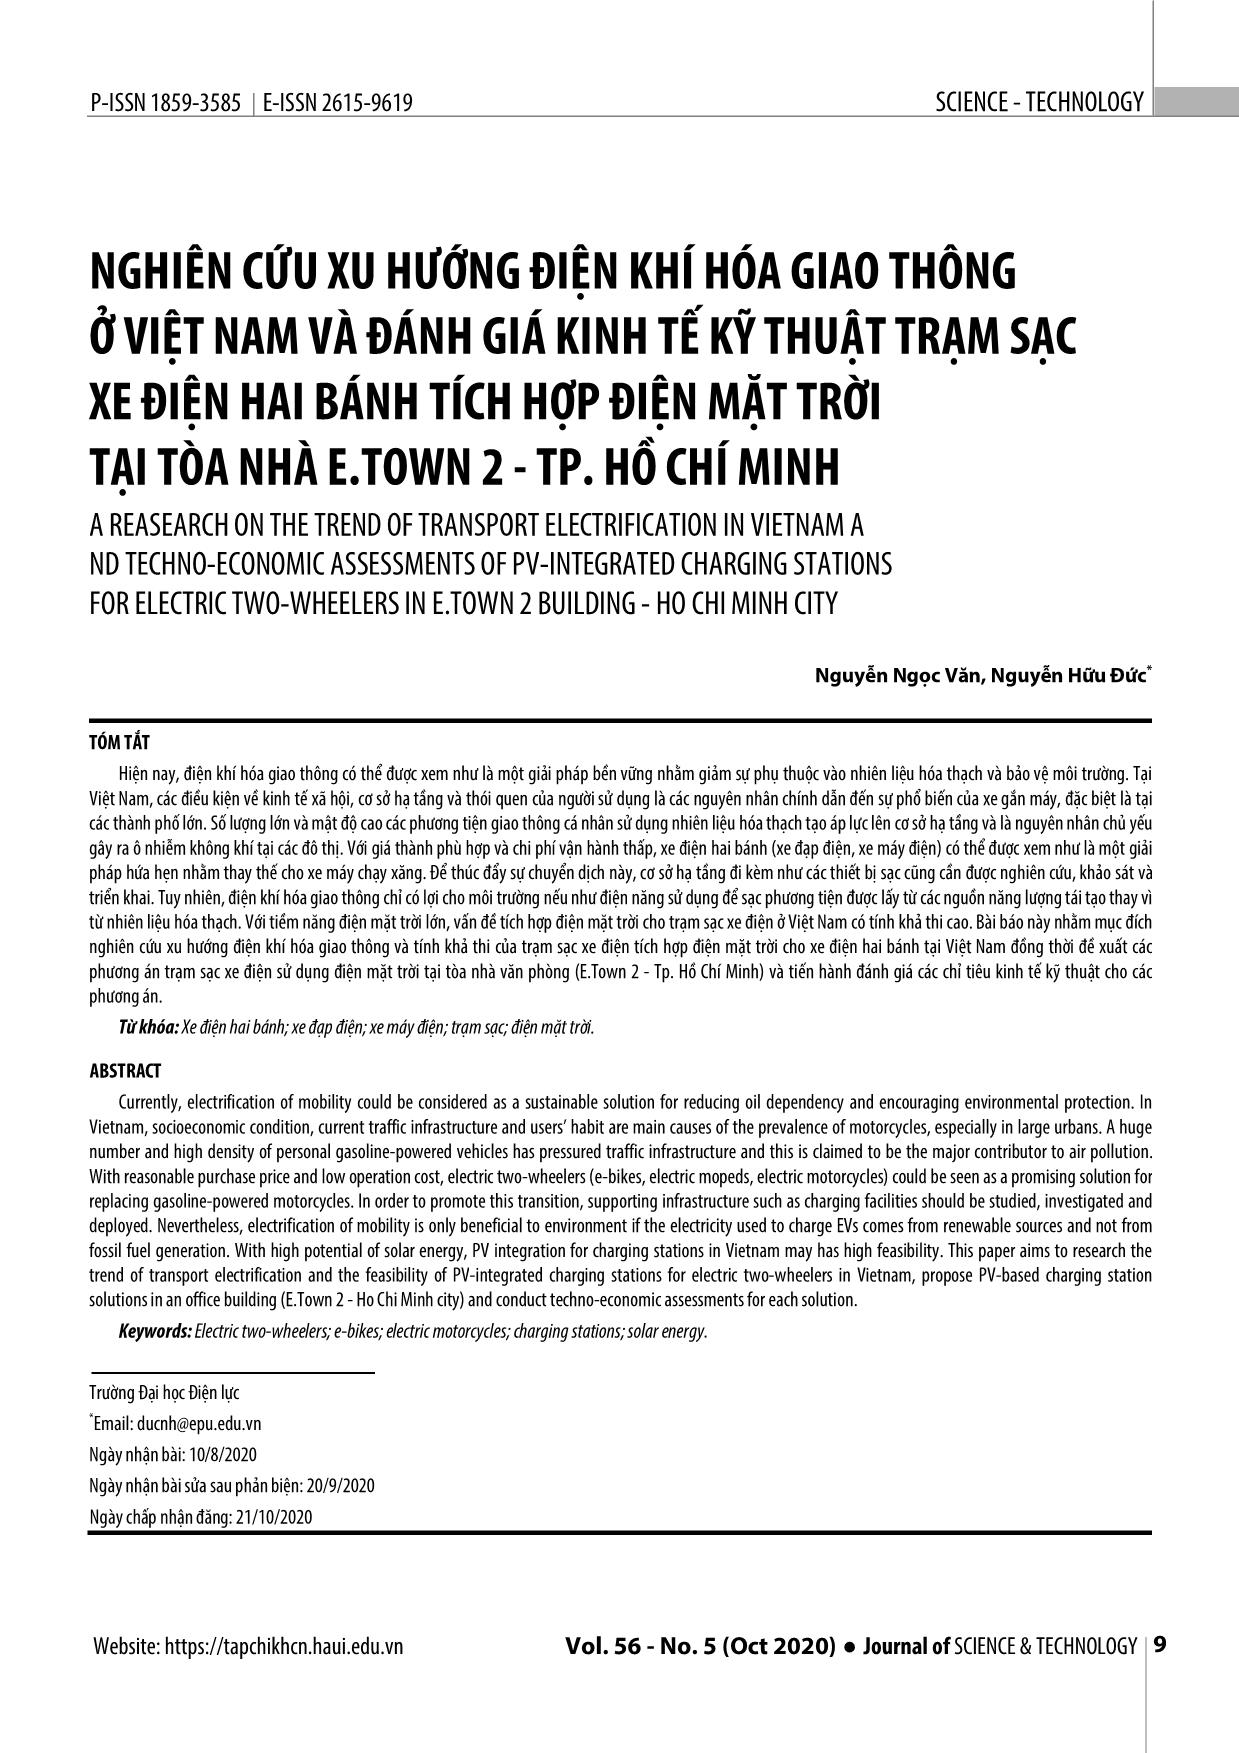 Nghiên cứu xu hướng điện khí hóa giao thông ở Việt Nam và đánh giá kinh tế kỹ thuật trạm sạc xe điện hai bánh tích hợp điện mặt trời tại tòa nhà E.Town 2 - thành phố Hồ Chí Minh trang 1